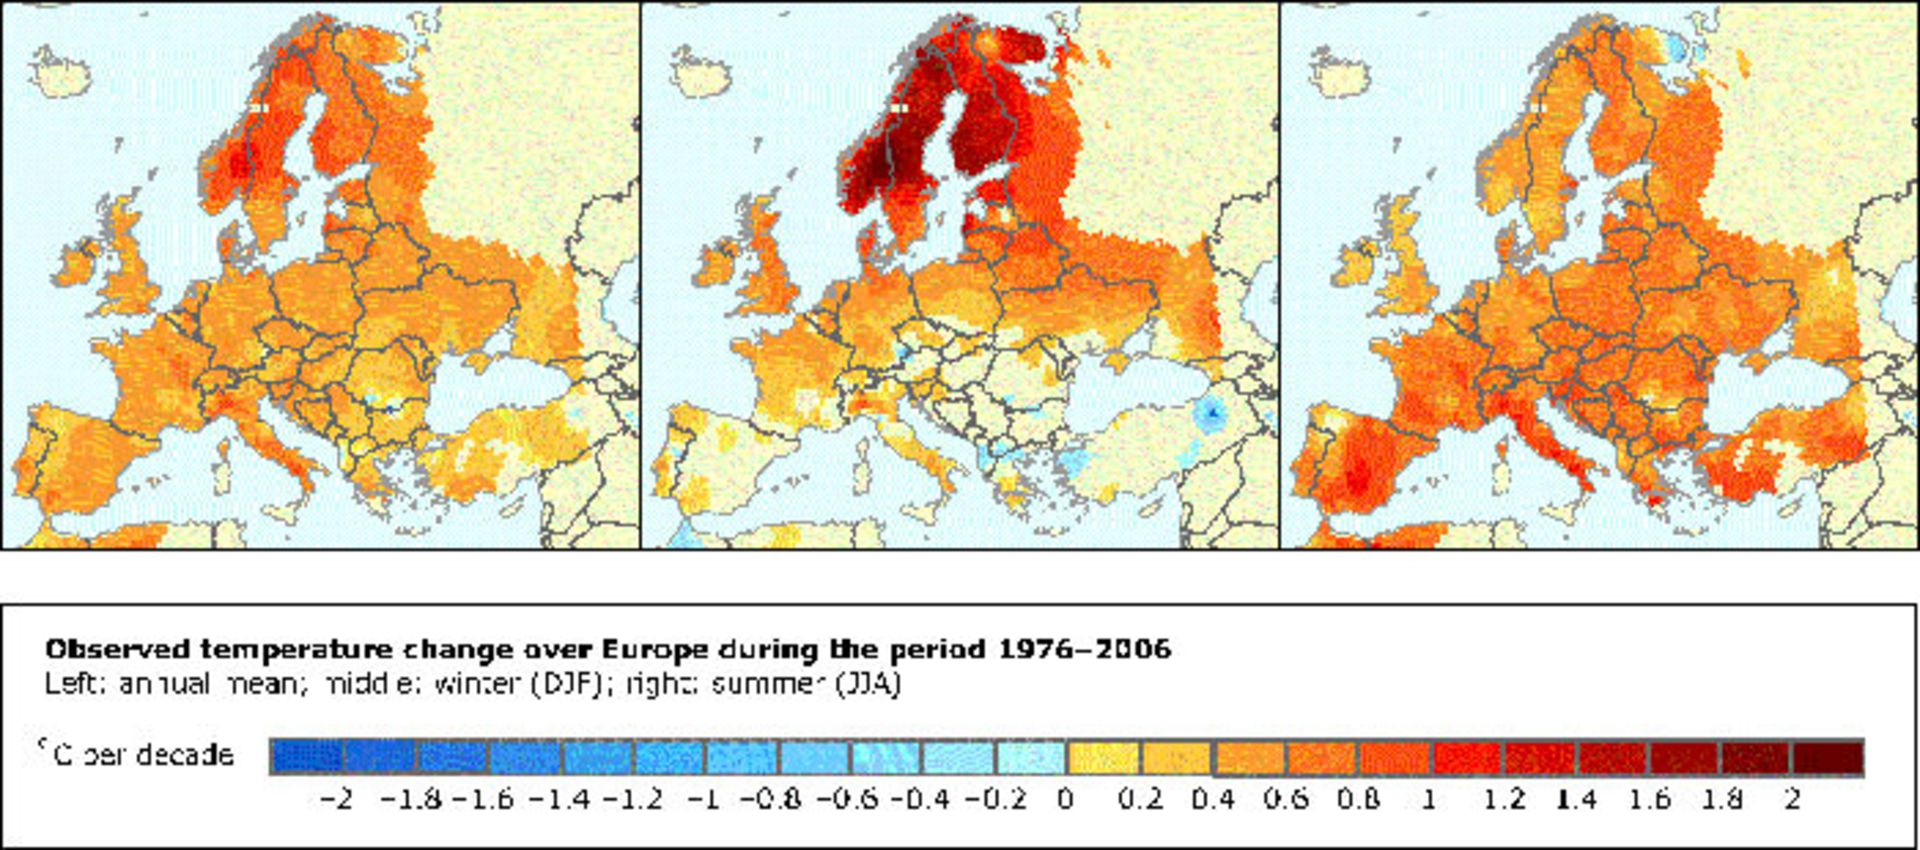 تغییرات اقلیمی اروپا / Europe climate change